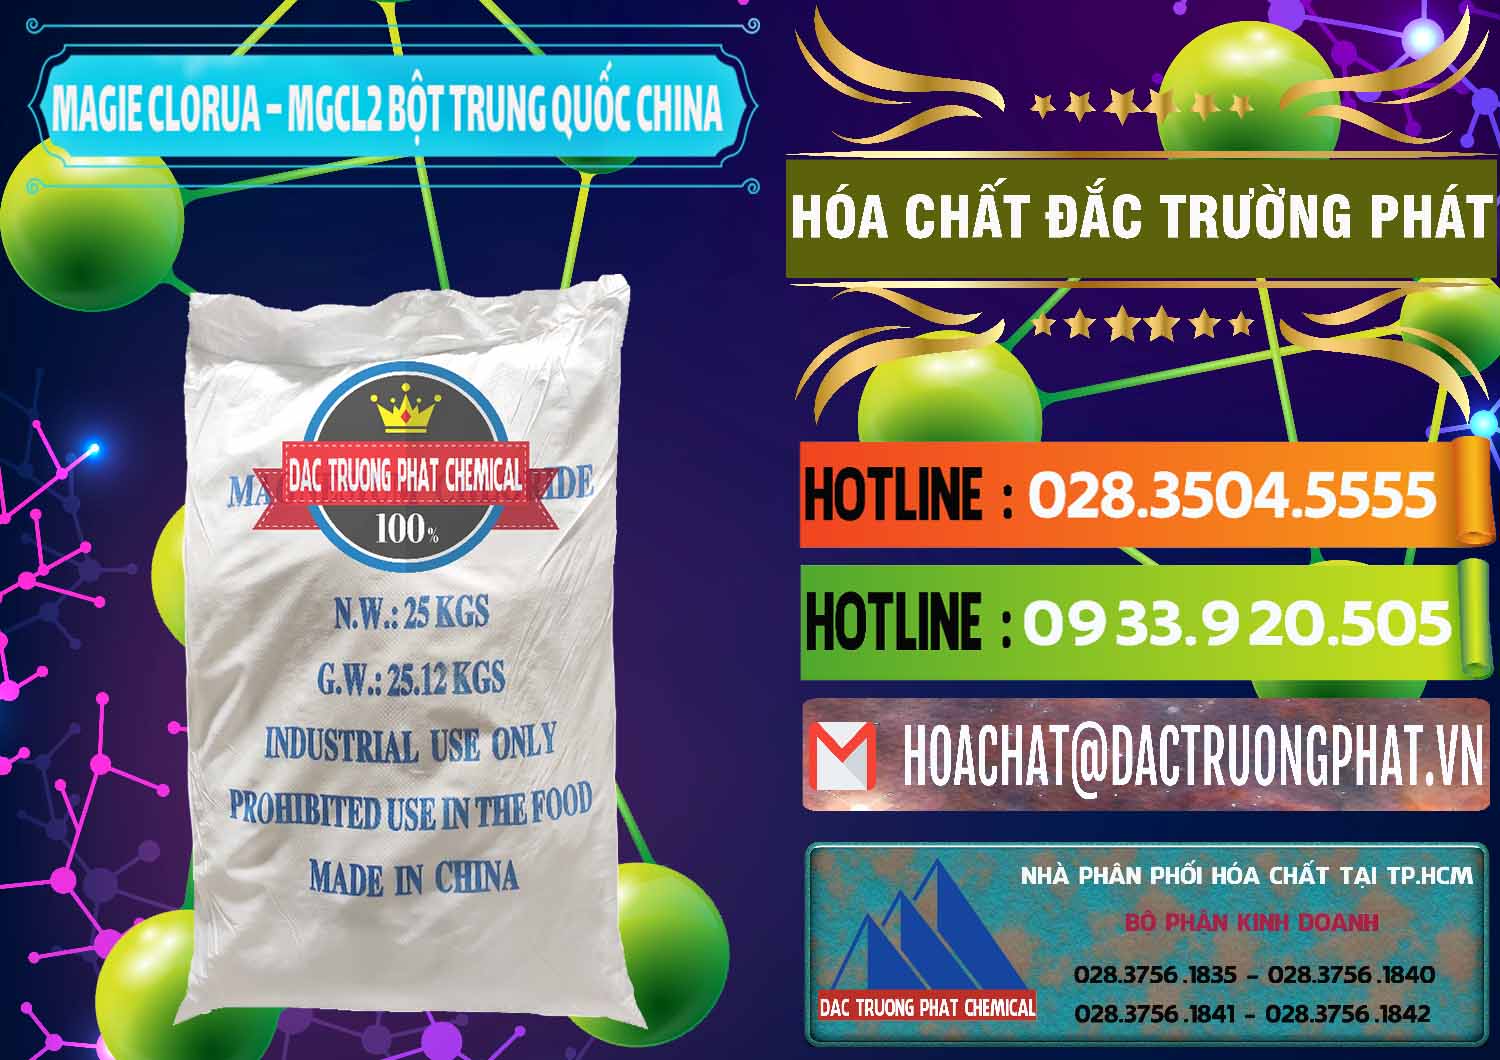 Đơn vị chuyên phân phối & bán Magie Clorua – MGCL2 96% Dạng Bột Bao Chữ Xanh Trung Quốc China - 0207 - Cty cung cấp ( kinh doanh ) hóa chất tại TP.HCM - cungcaphoachat.com.vn